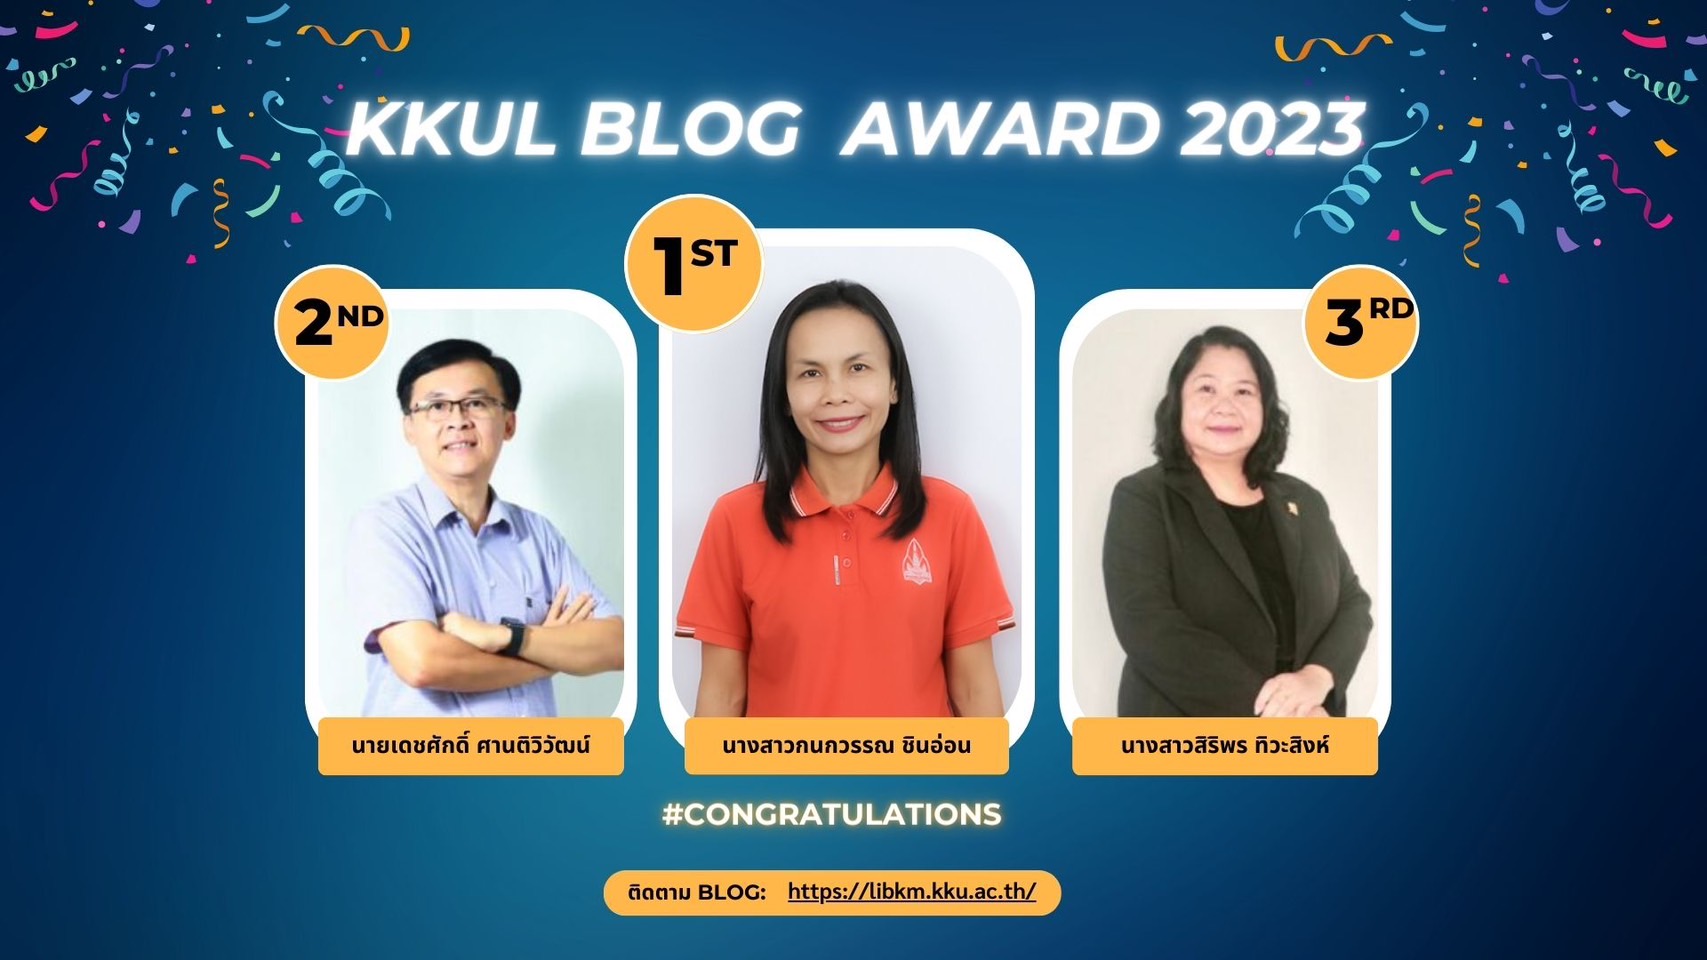 คณะกรรมการจัดการความรู้และนวัตกรรม ขอแสดงความยินดีกับผู้ได้รับรางวัลในโครงการ KKUL BLOG AWARD 2023